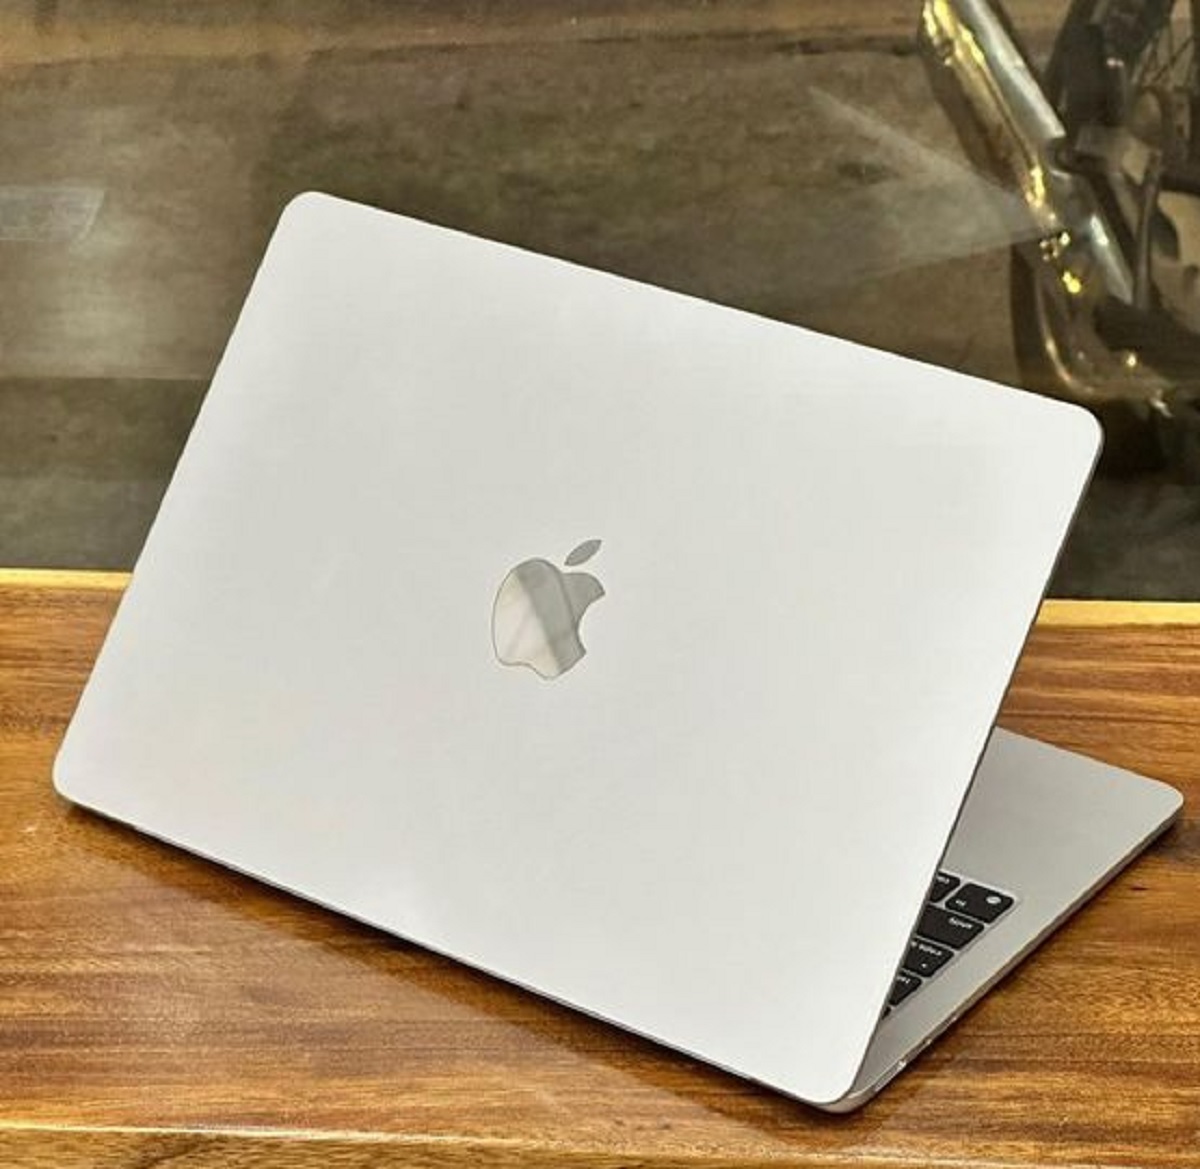 Cari Laptop untuk Skripsian? Berikut 5 MacBook yang Cocok untuk Skripsian dengan Budget Pelajar